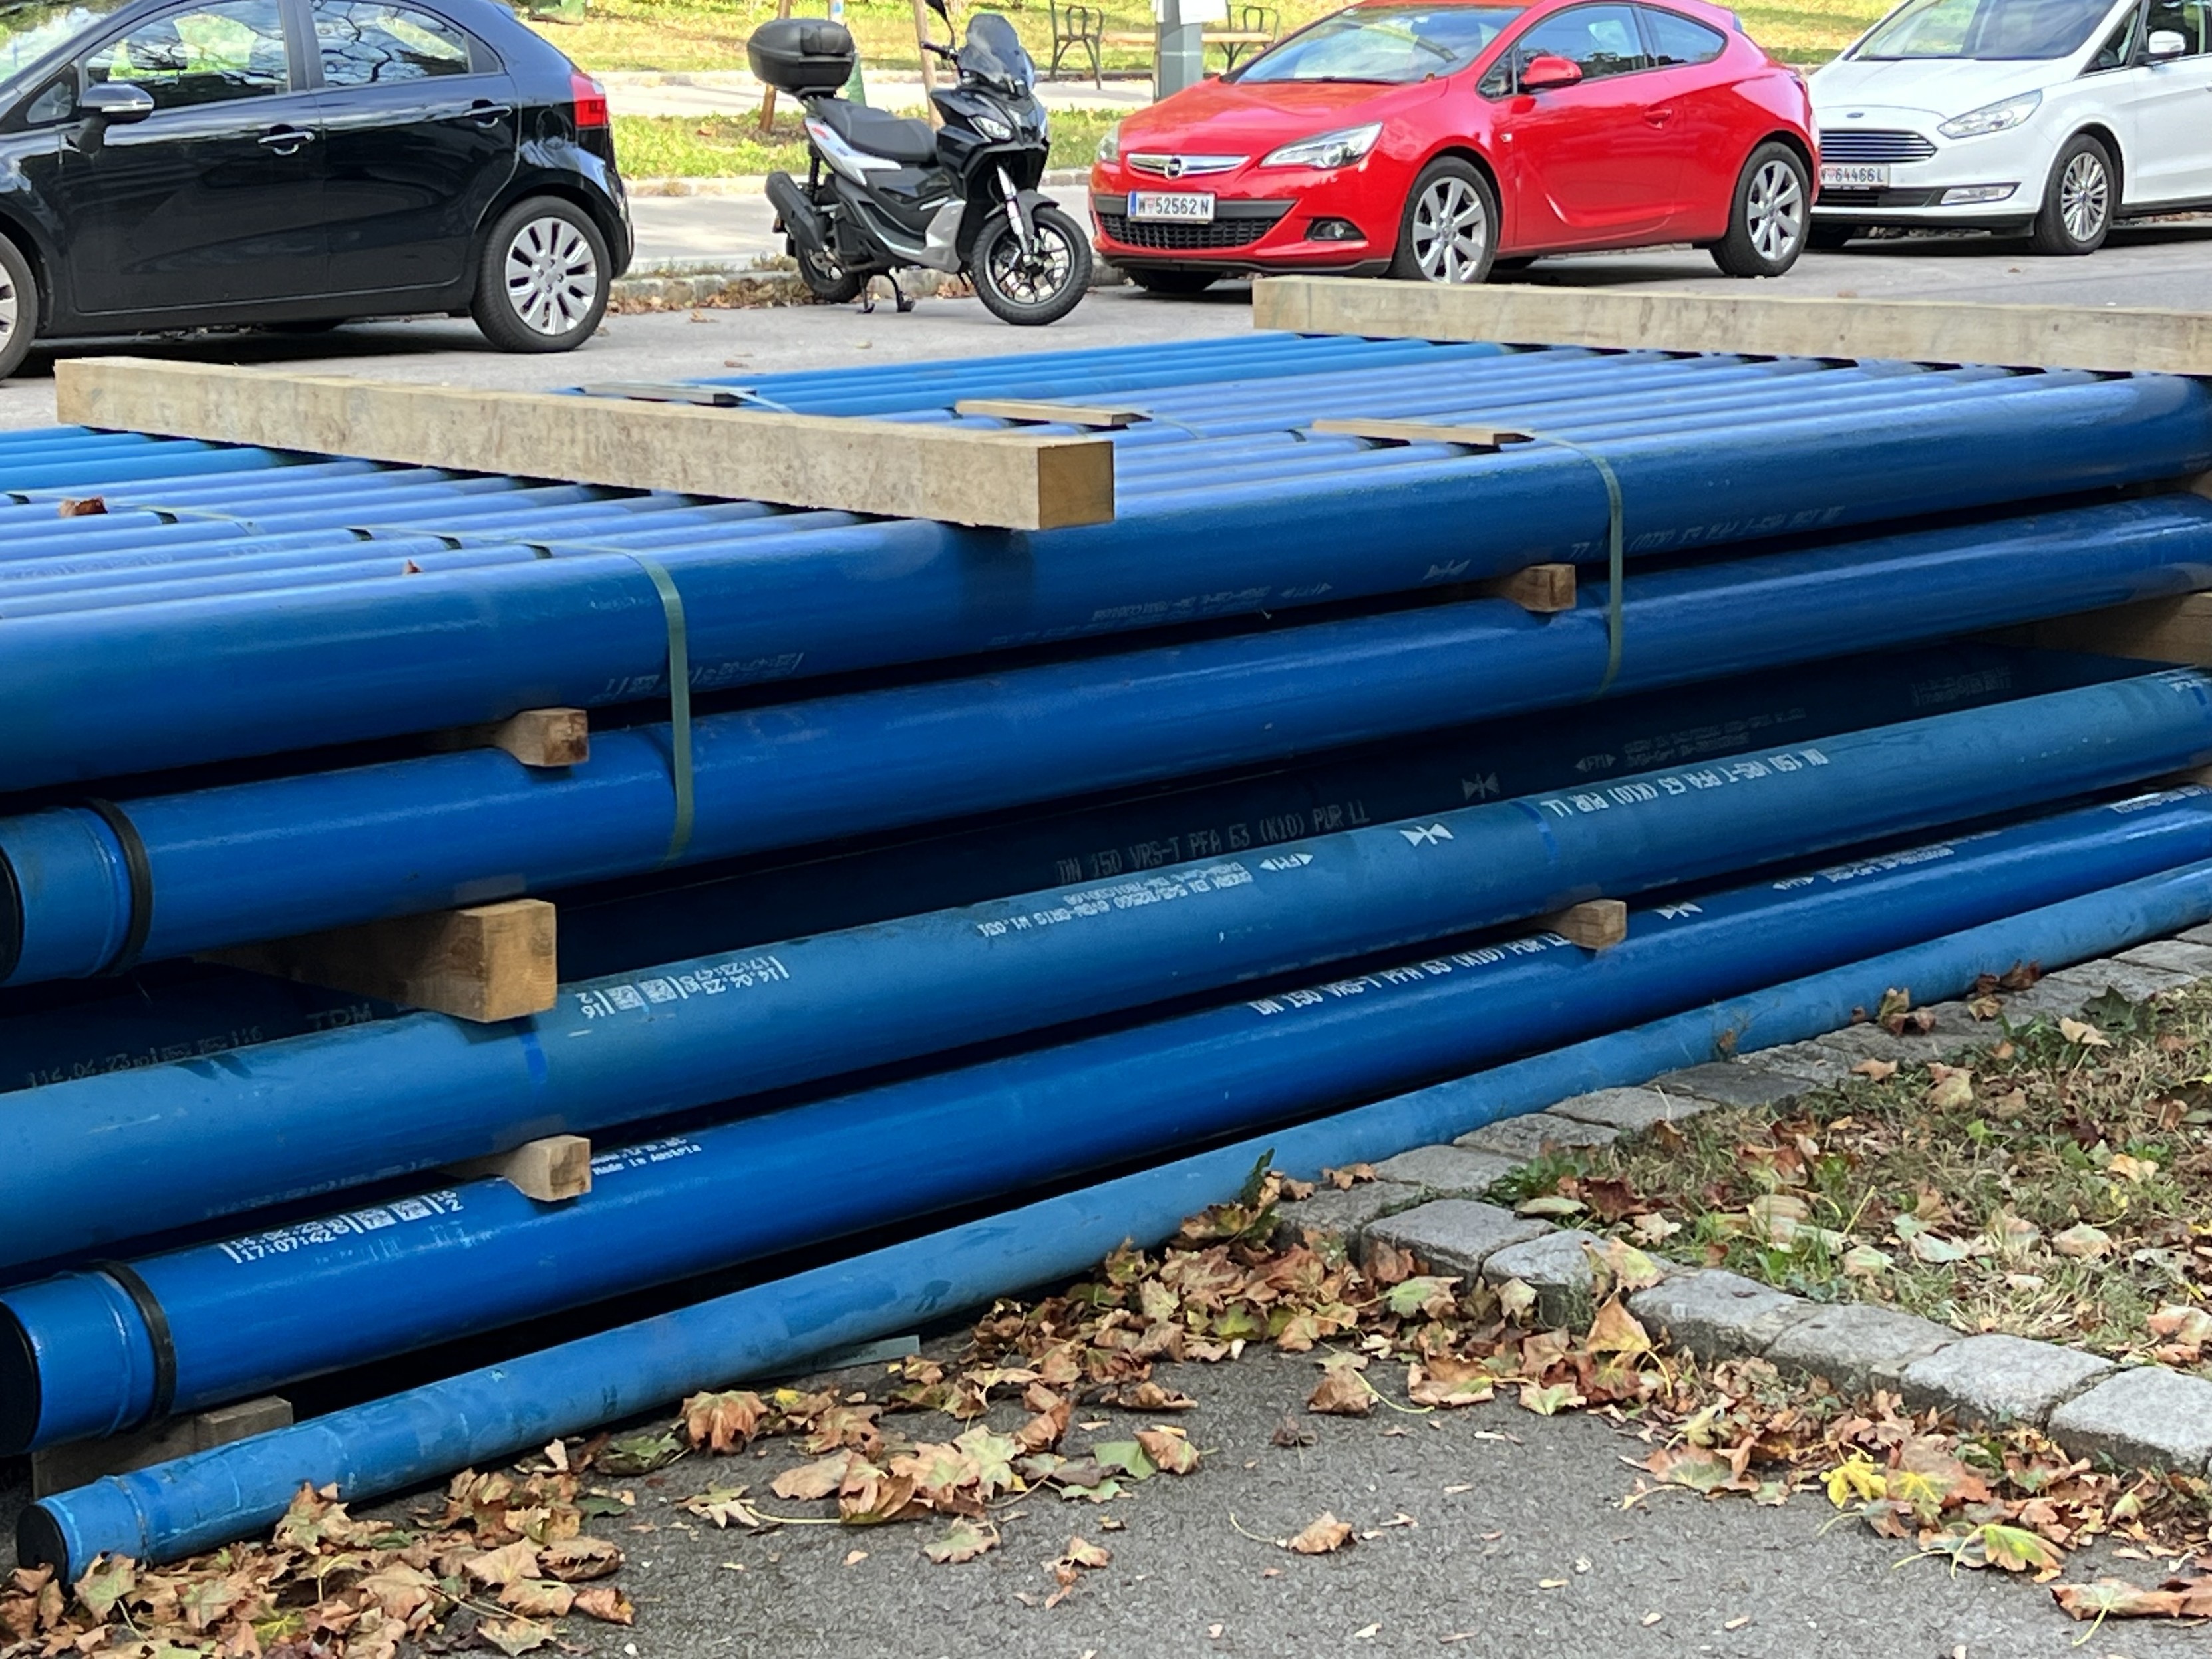 Stapel von blauen Rohren auf einer Baustelle mit Autos im Hintergrund.